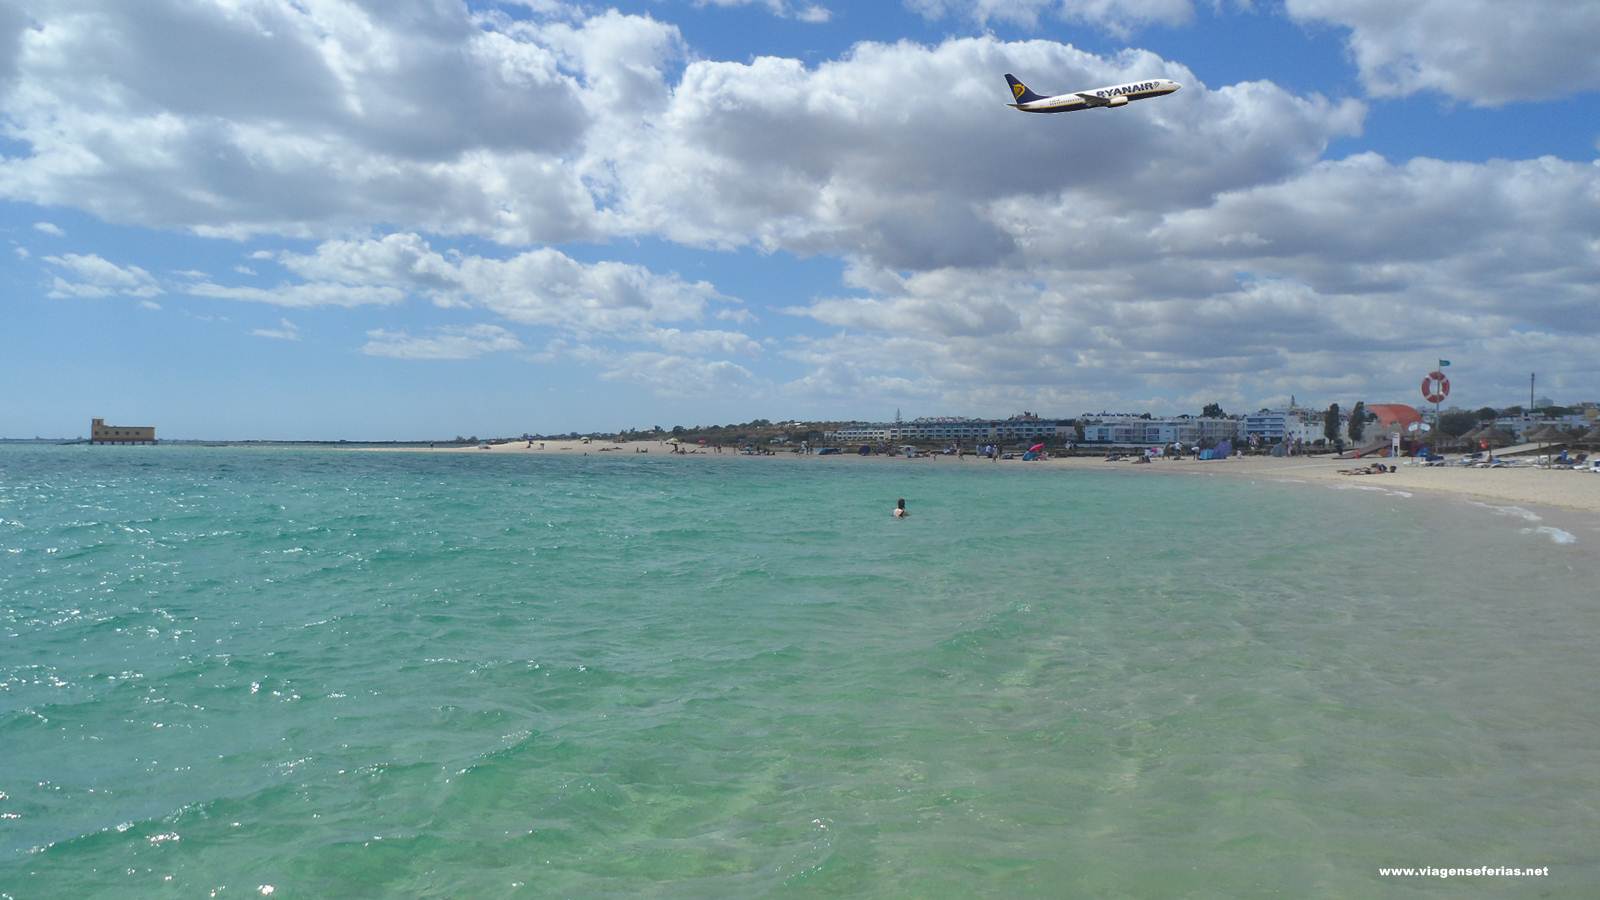 Avião da Ryanair a voa sobre uma praia de Faro no Algarve